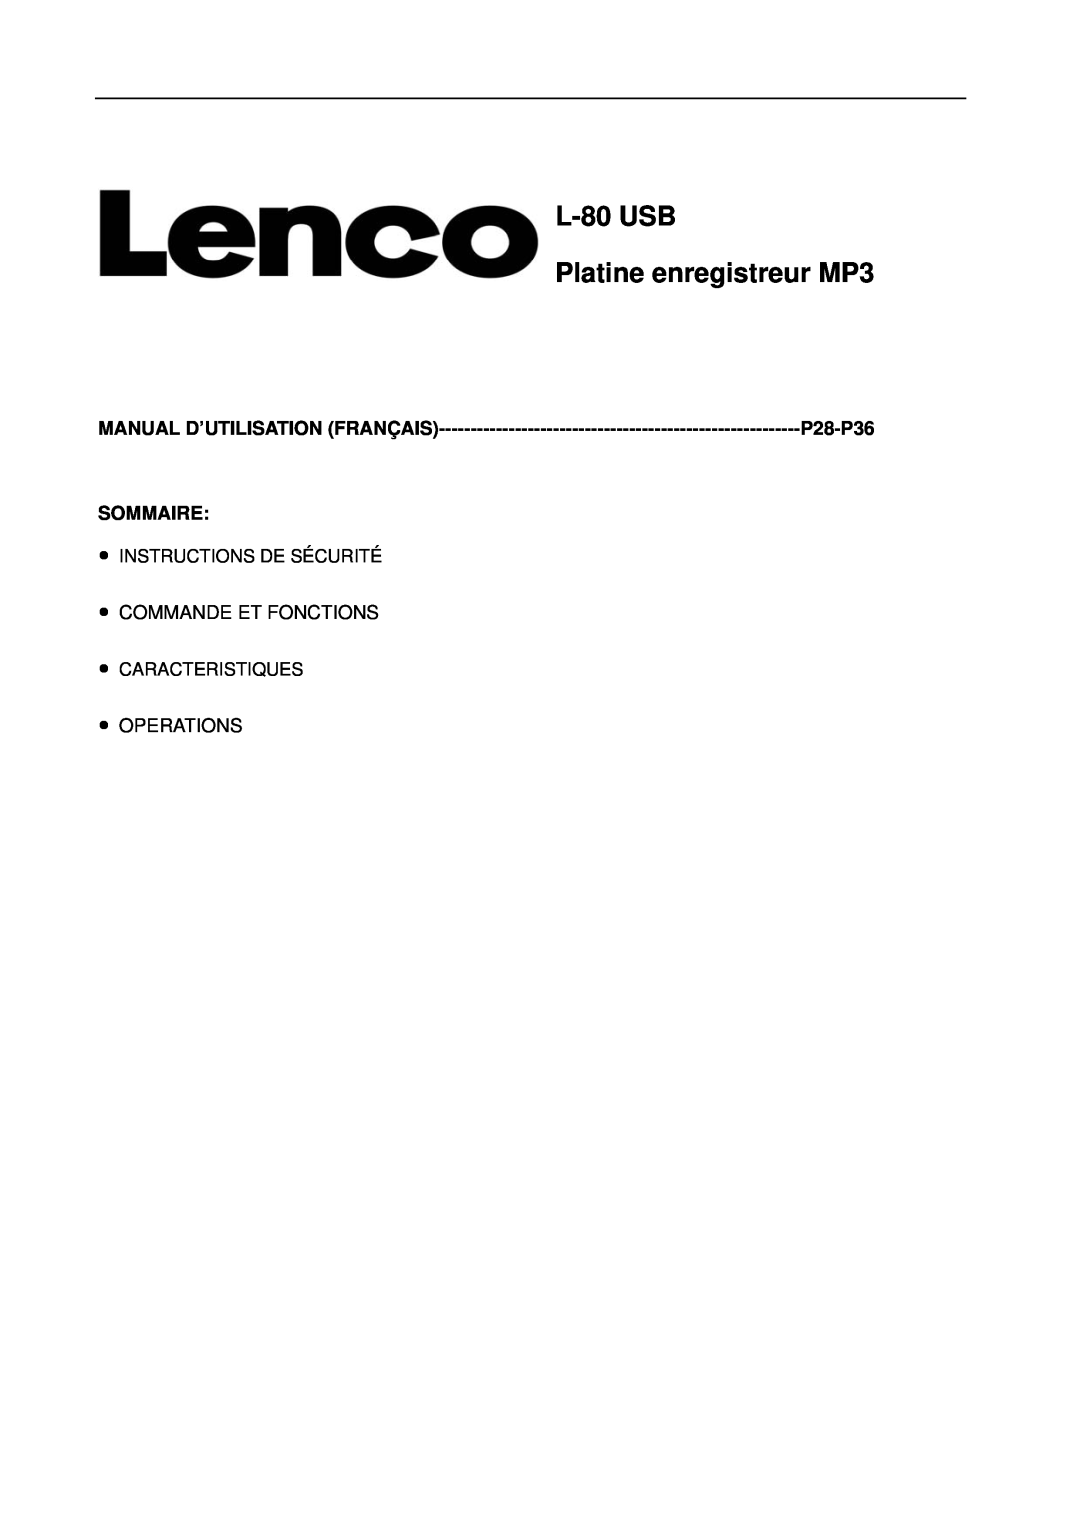 Lenco Marine L-80 USB user manual L-80USB Platine enregistreur MP3, P28-P36, Sommaire, Manual D’Utilisation Français 